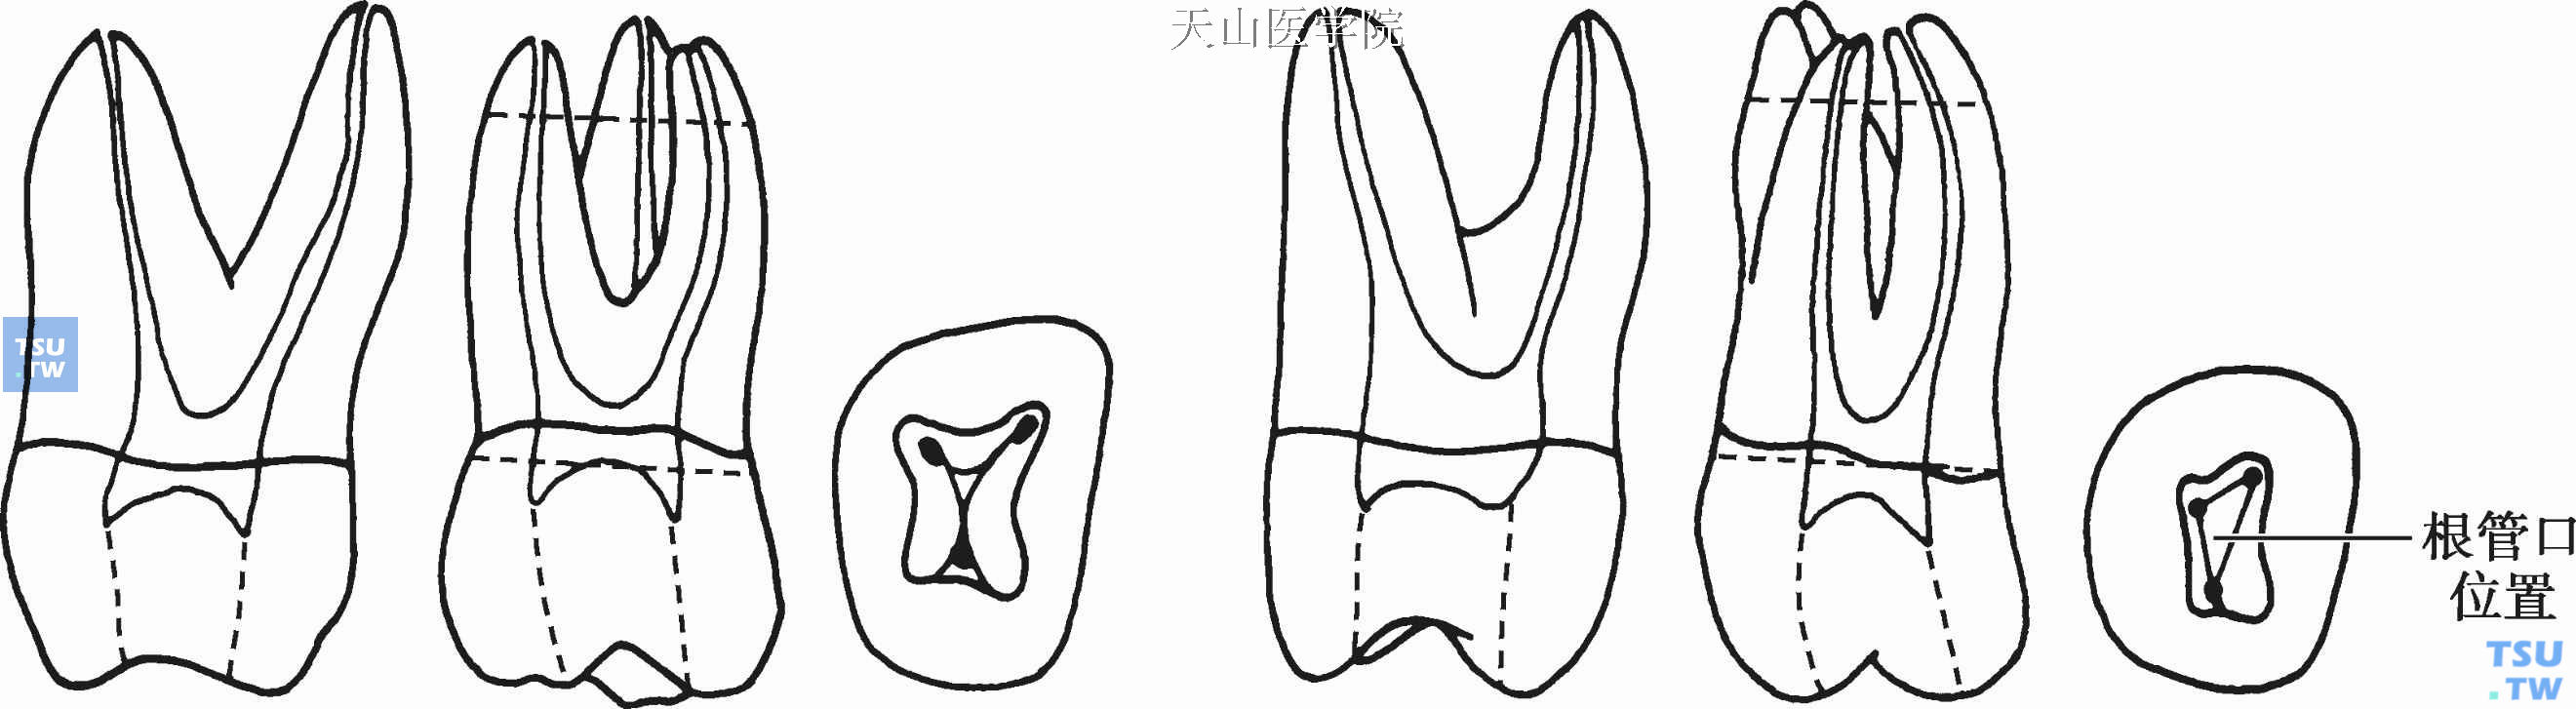 上颌磨牙根管形态及根管口位置